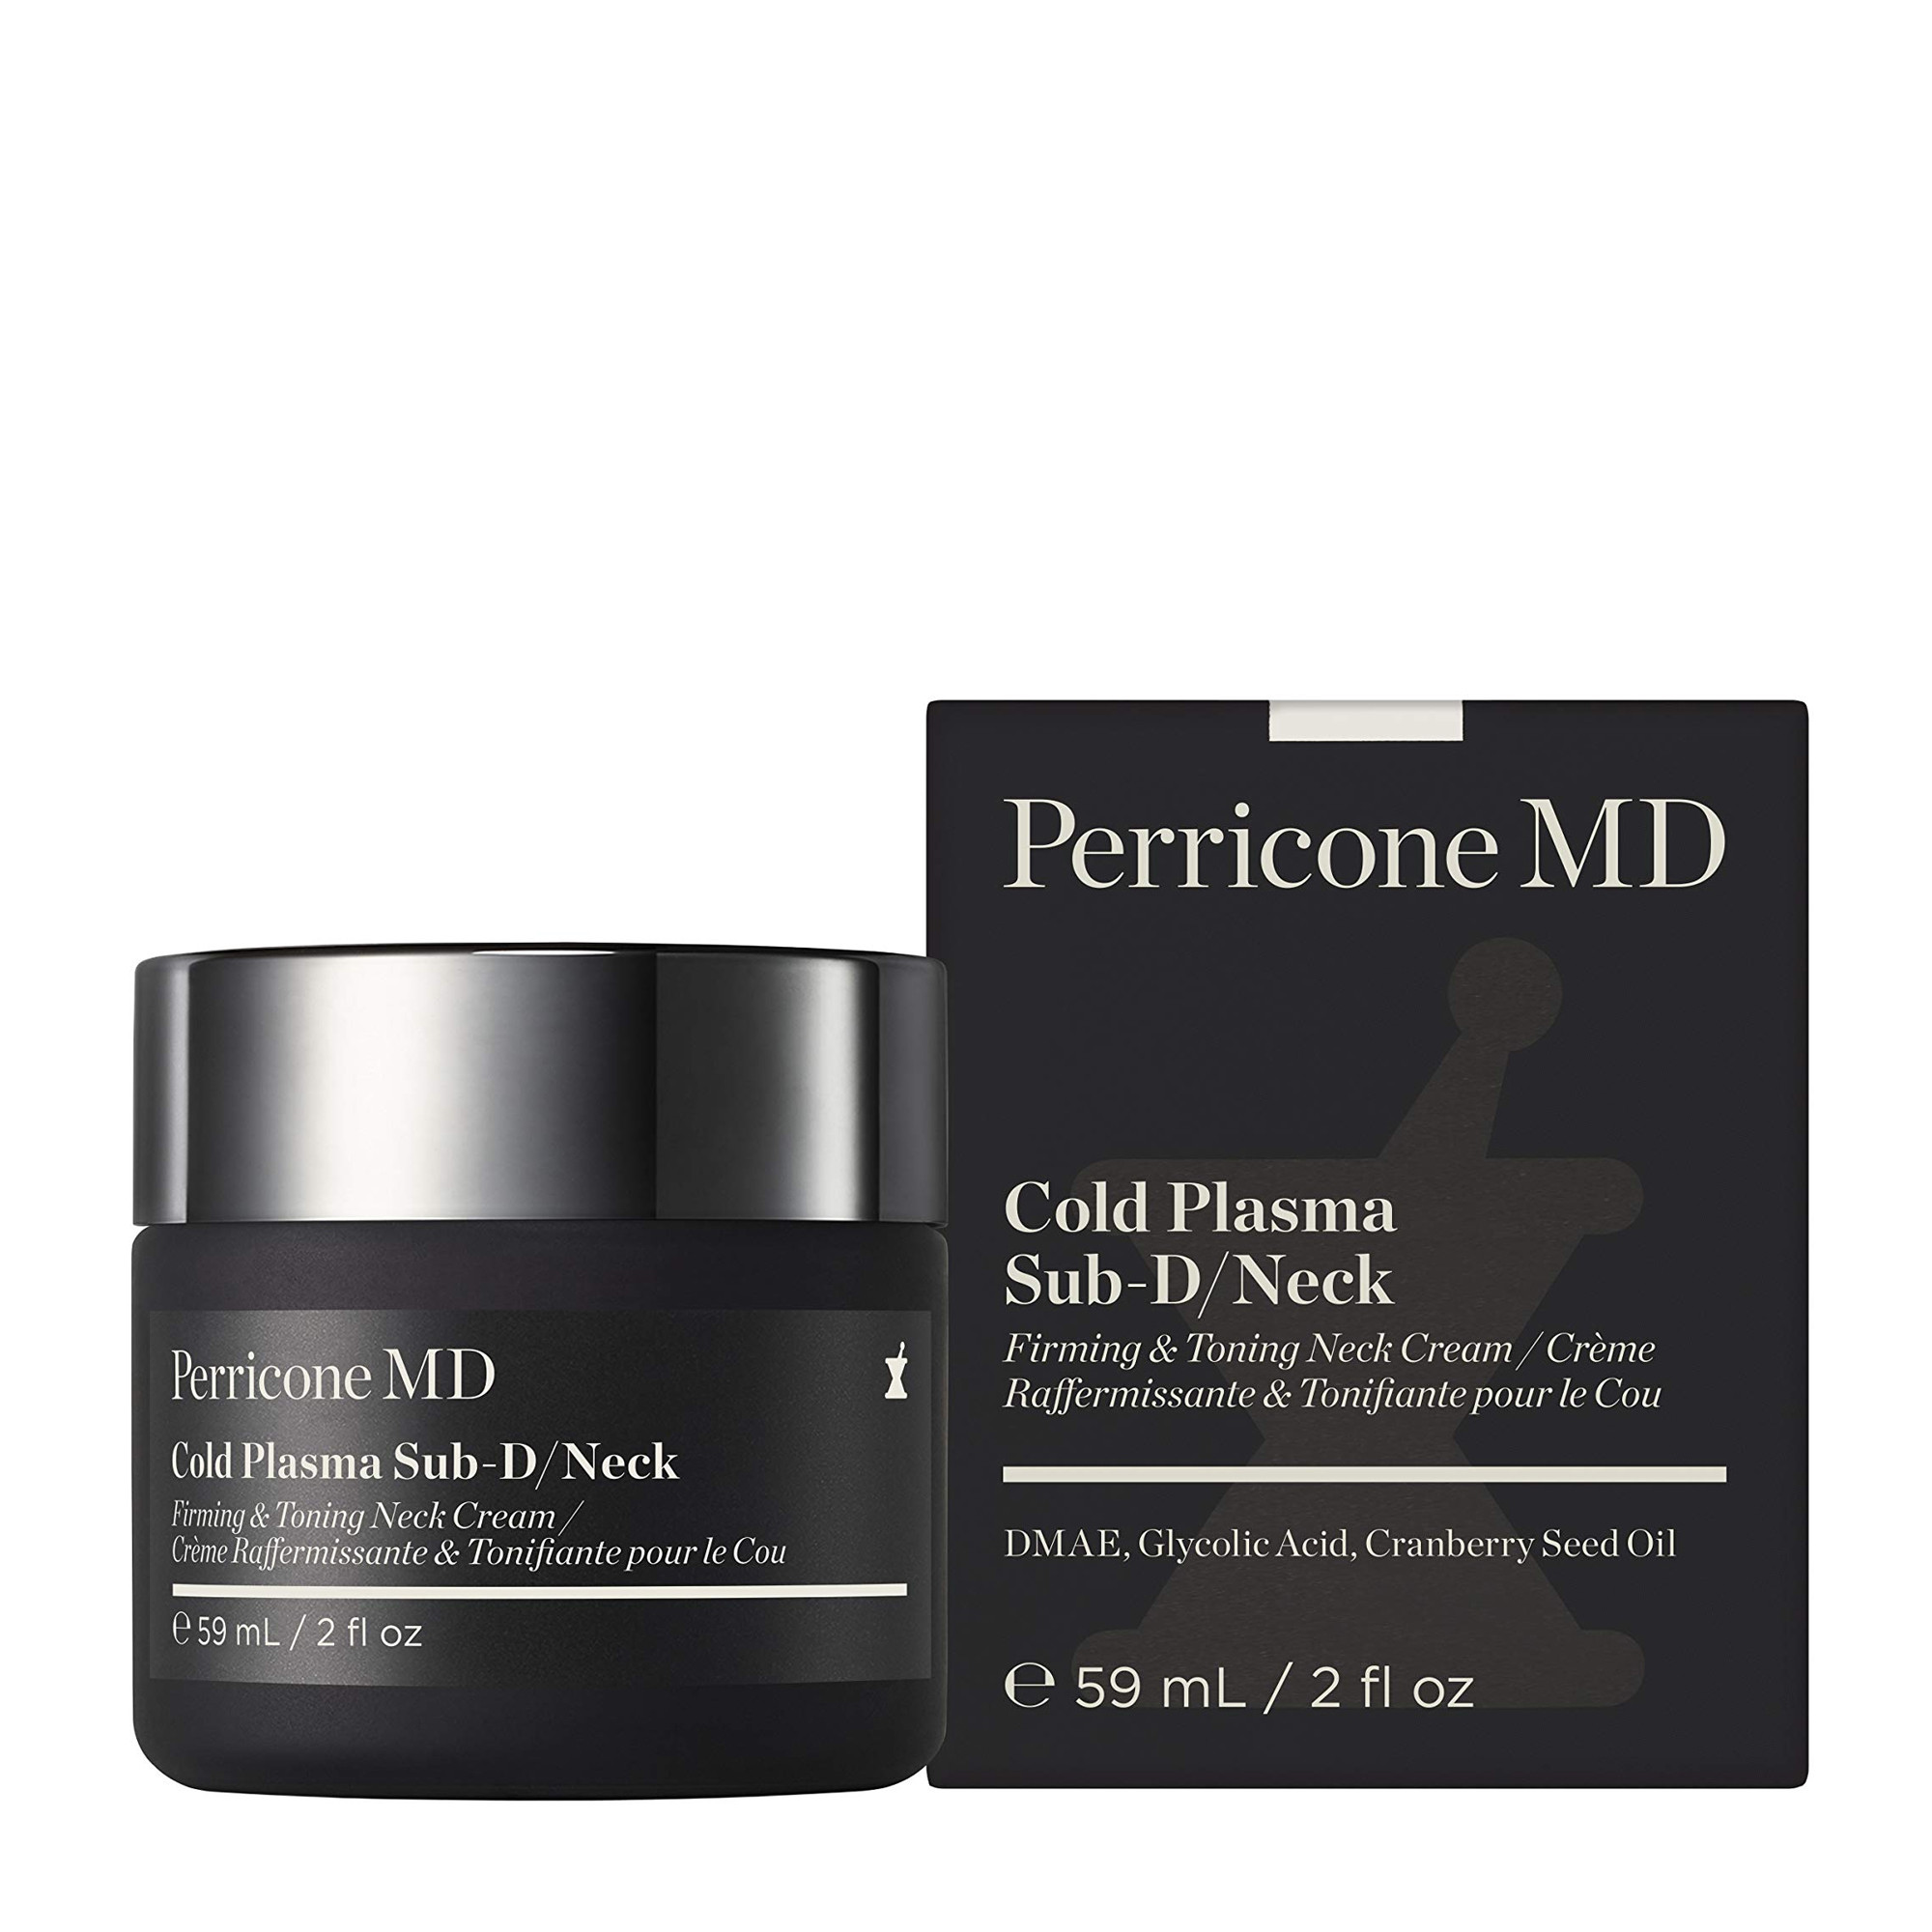 Perricone MD Cold Plasma + Sub D/Neck - Омолаживающая крем-сыворотка для шеи и декольте